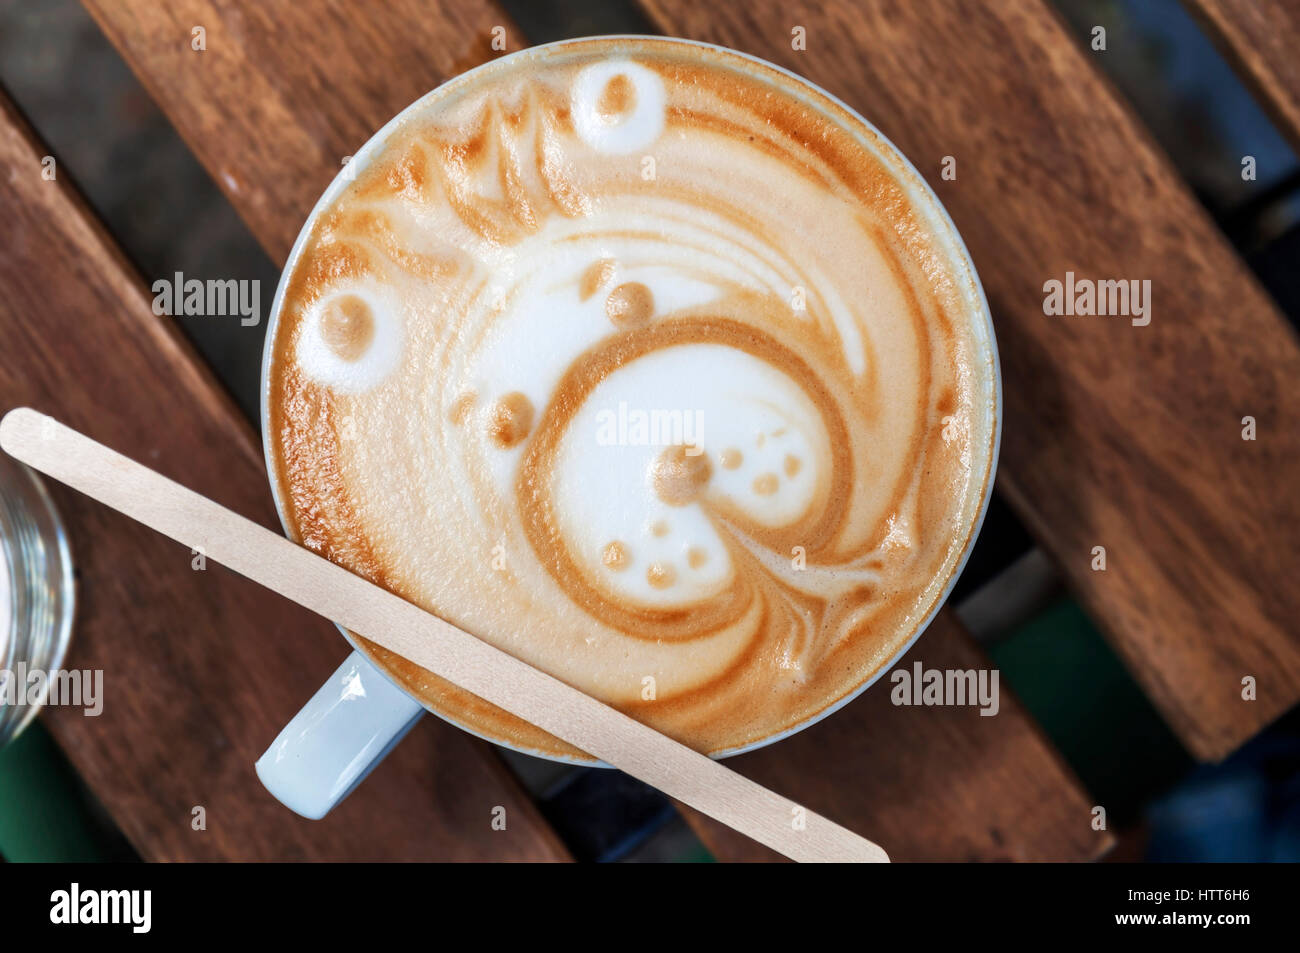 Latte art bear on wooden table Stock Photo